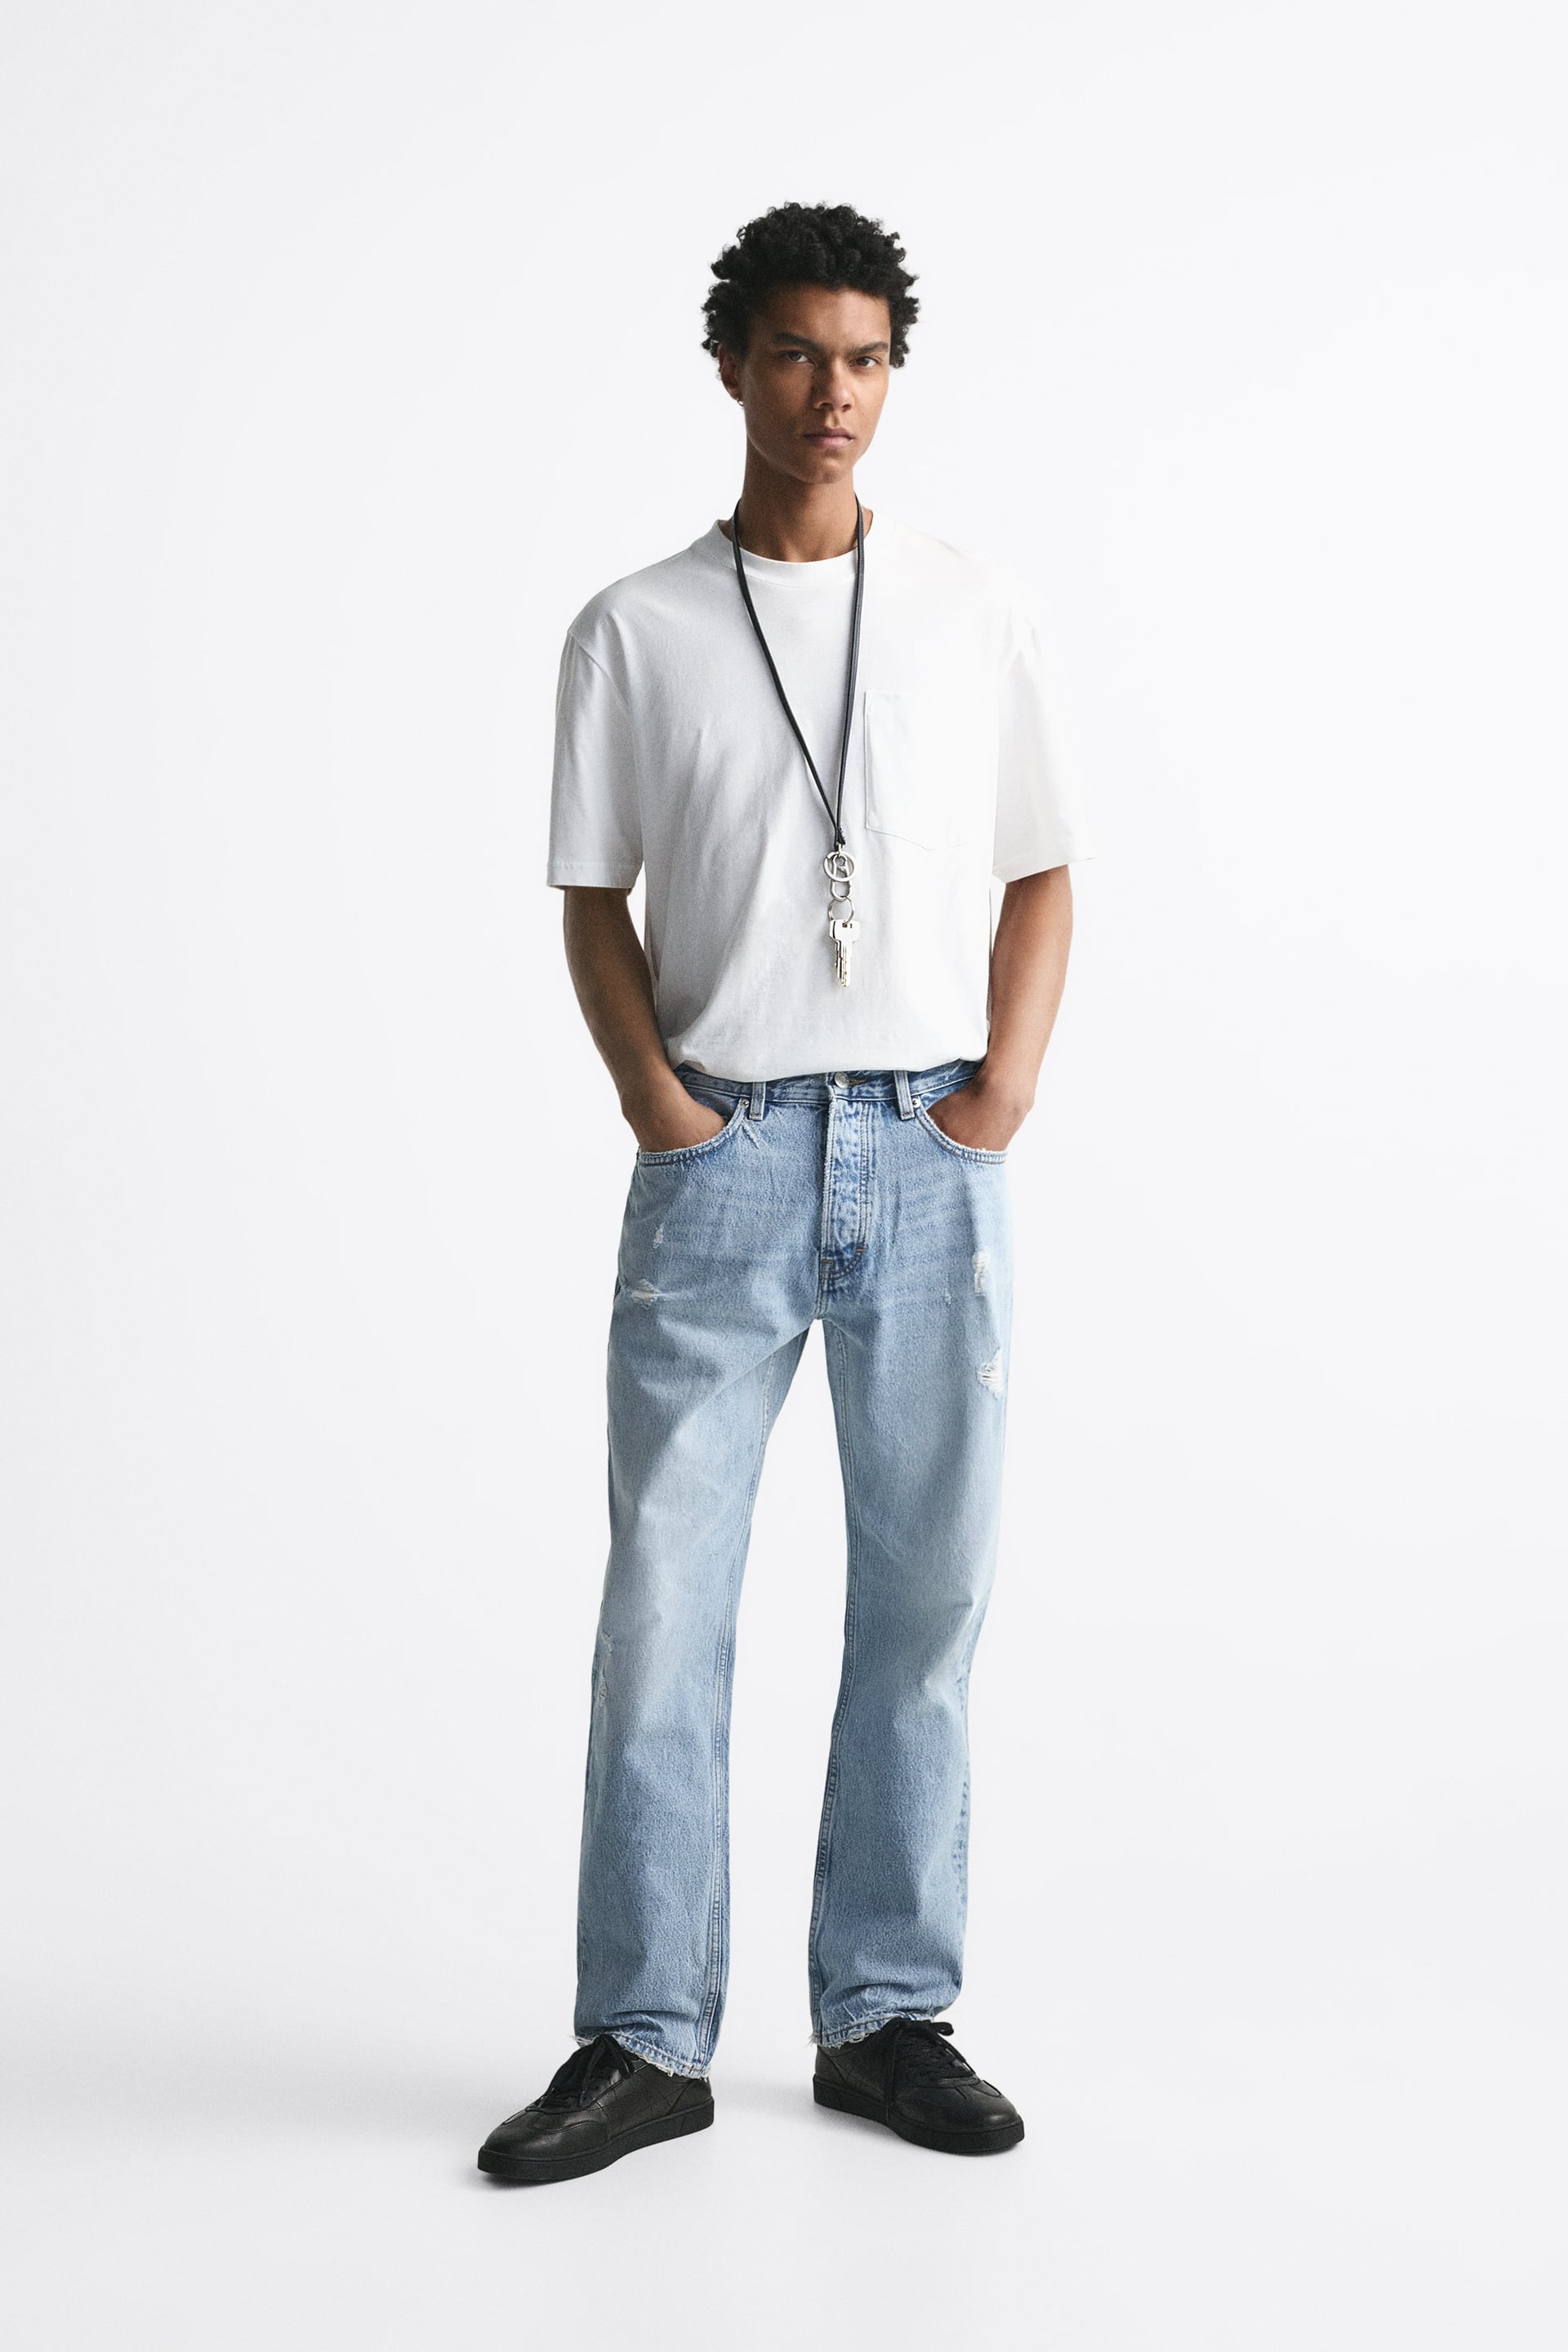 Zara Men's Jeans | tunersread.com